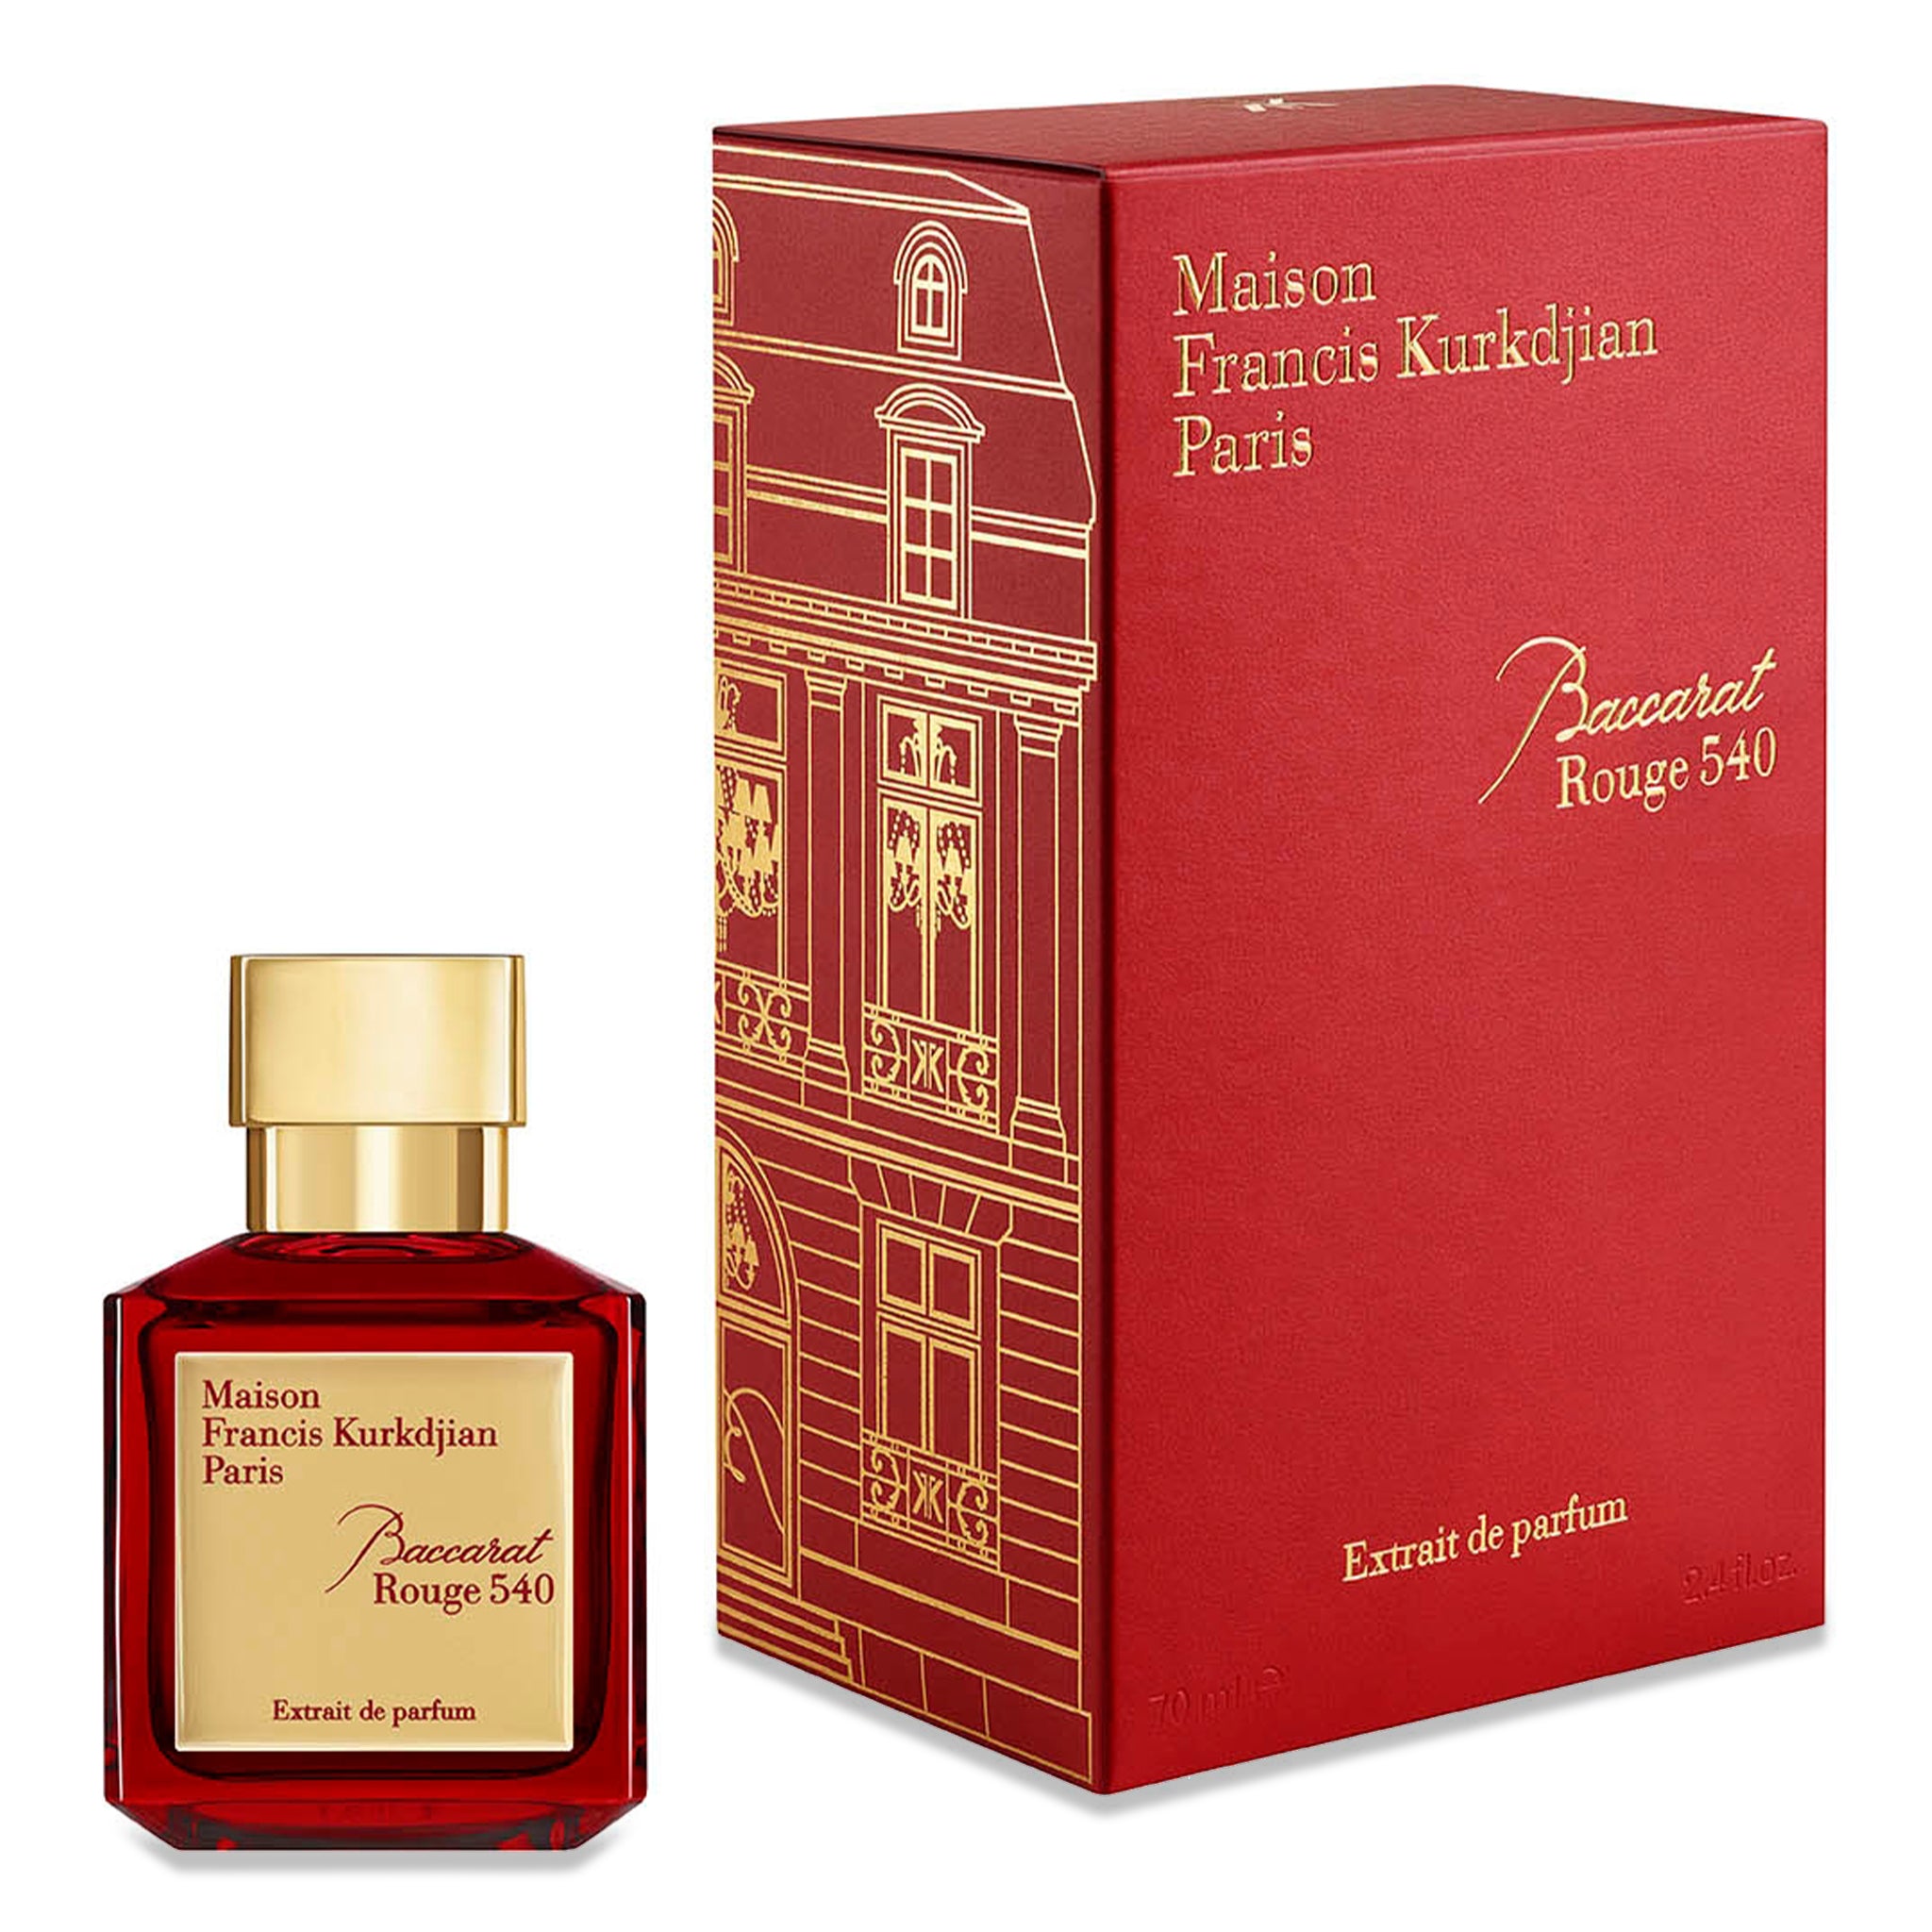 Image of Maison Francis Kurkdjian Baccarat Rouge 540 Extrait De Parfum 70ml